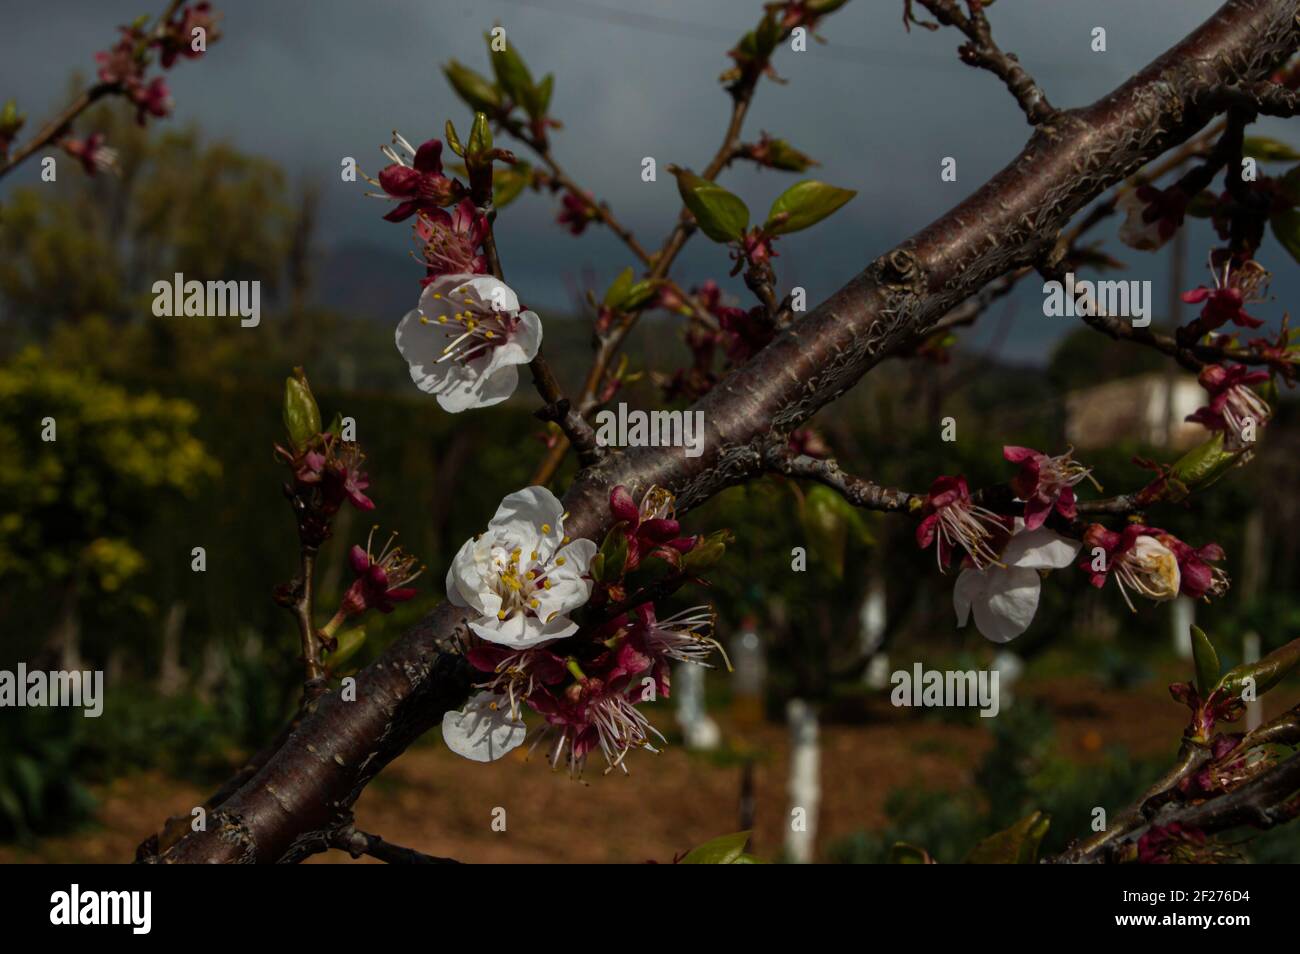 Speciale ramo con carino fiori piccoli -Rama de albaricoque floreada Foto Stock